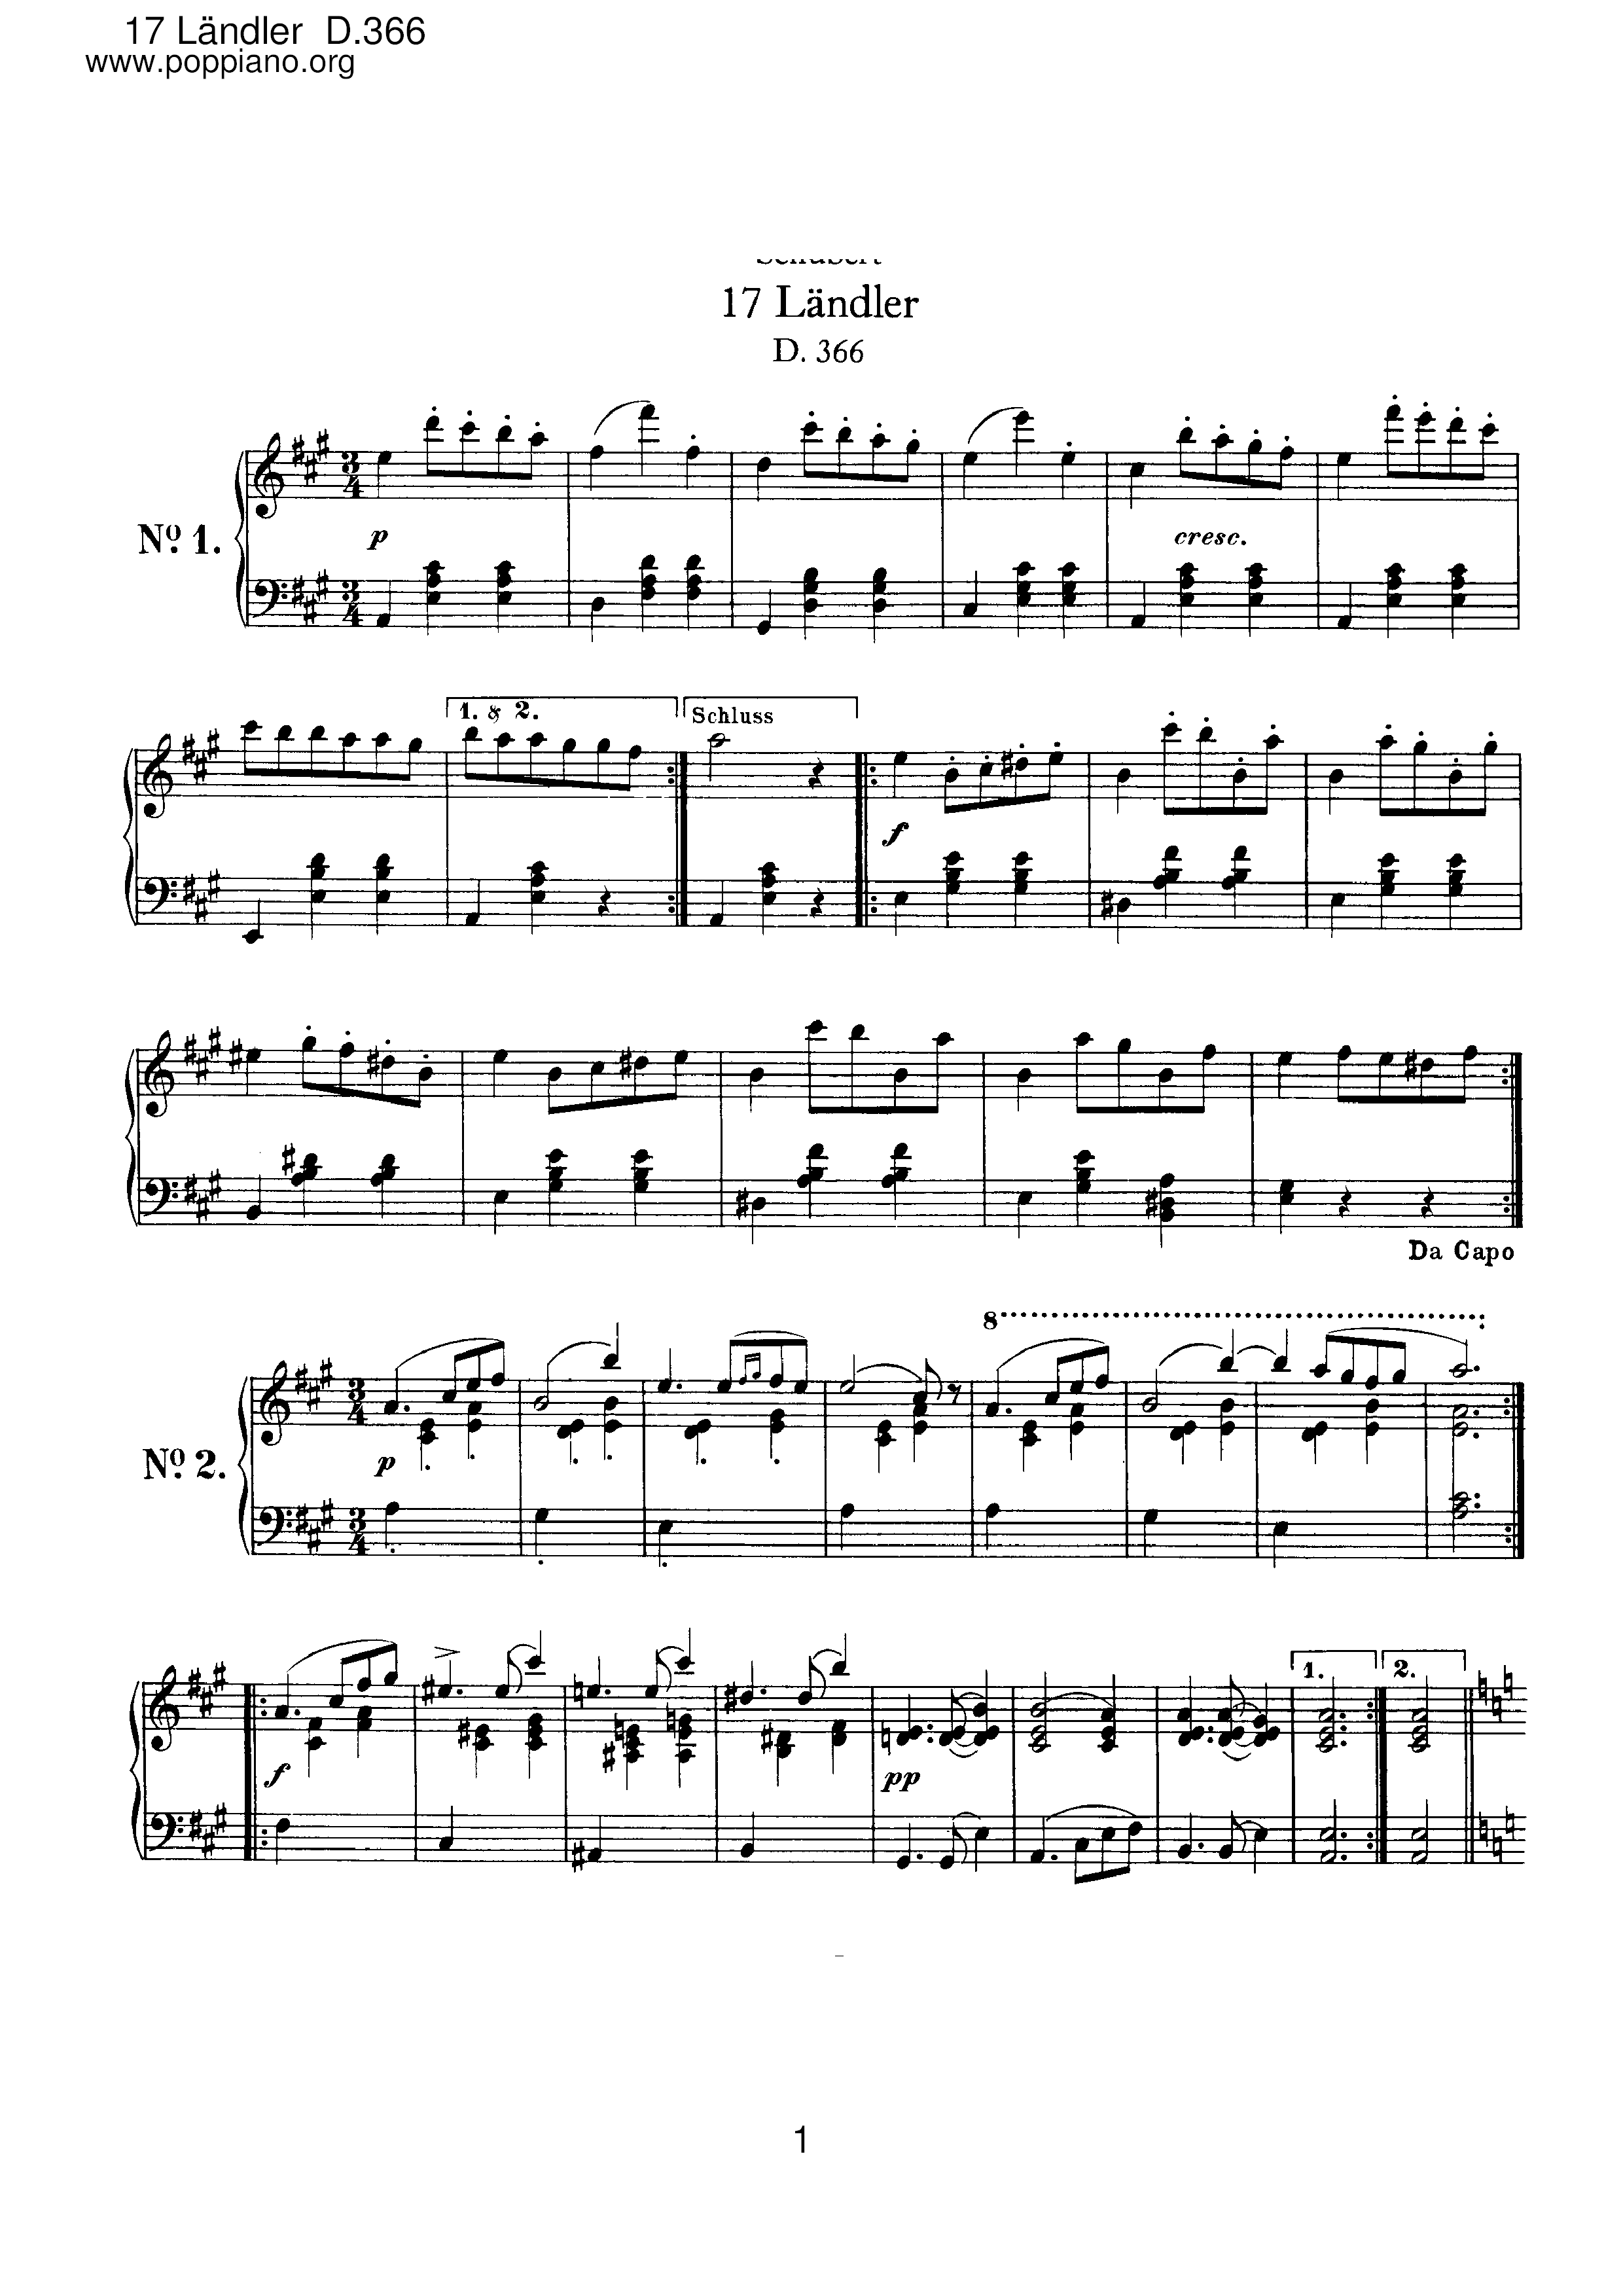 17 Landler, D.366ピアノ譜